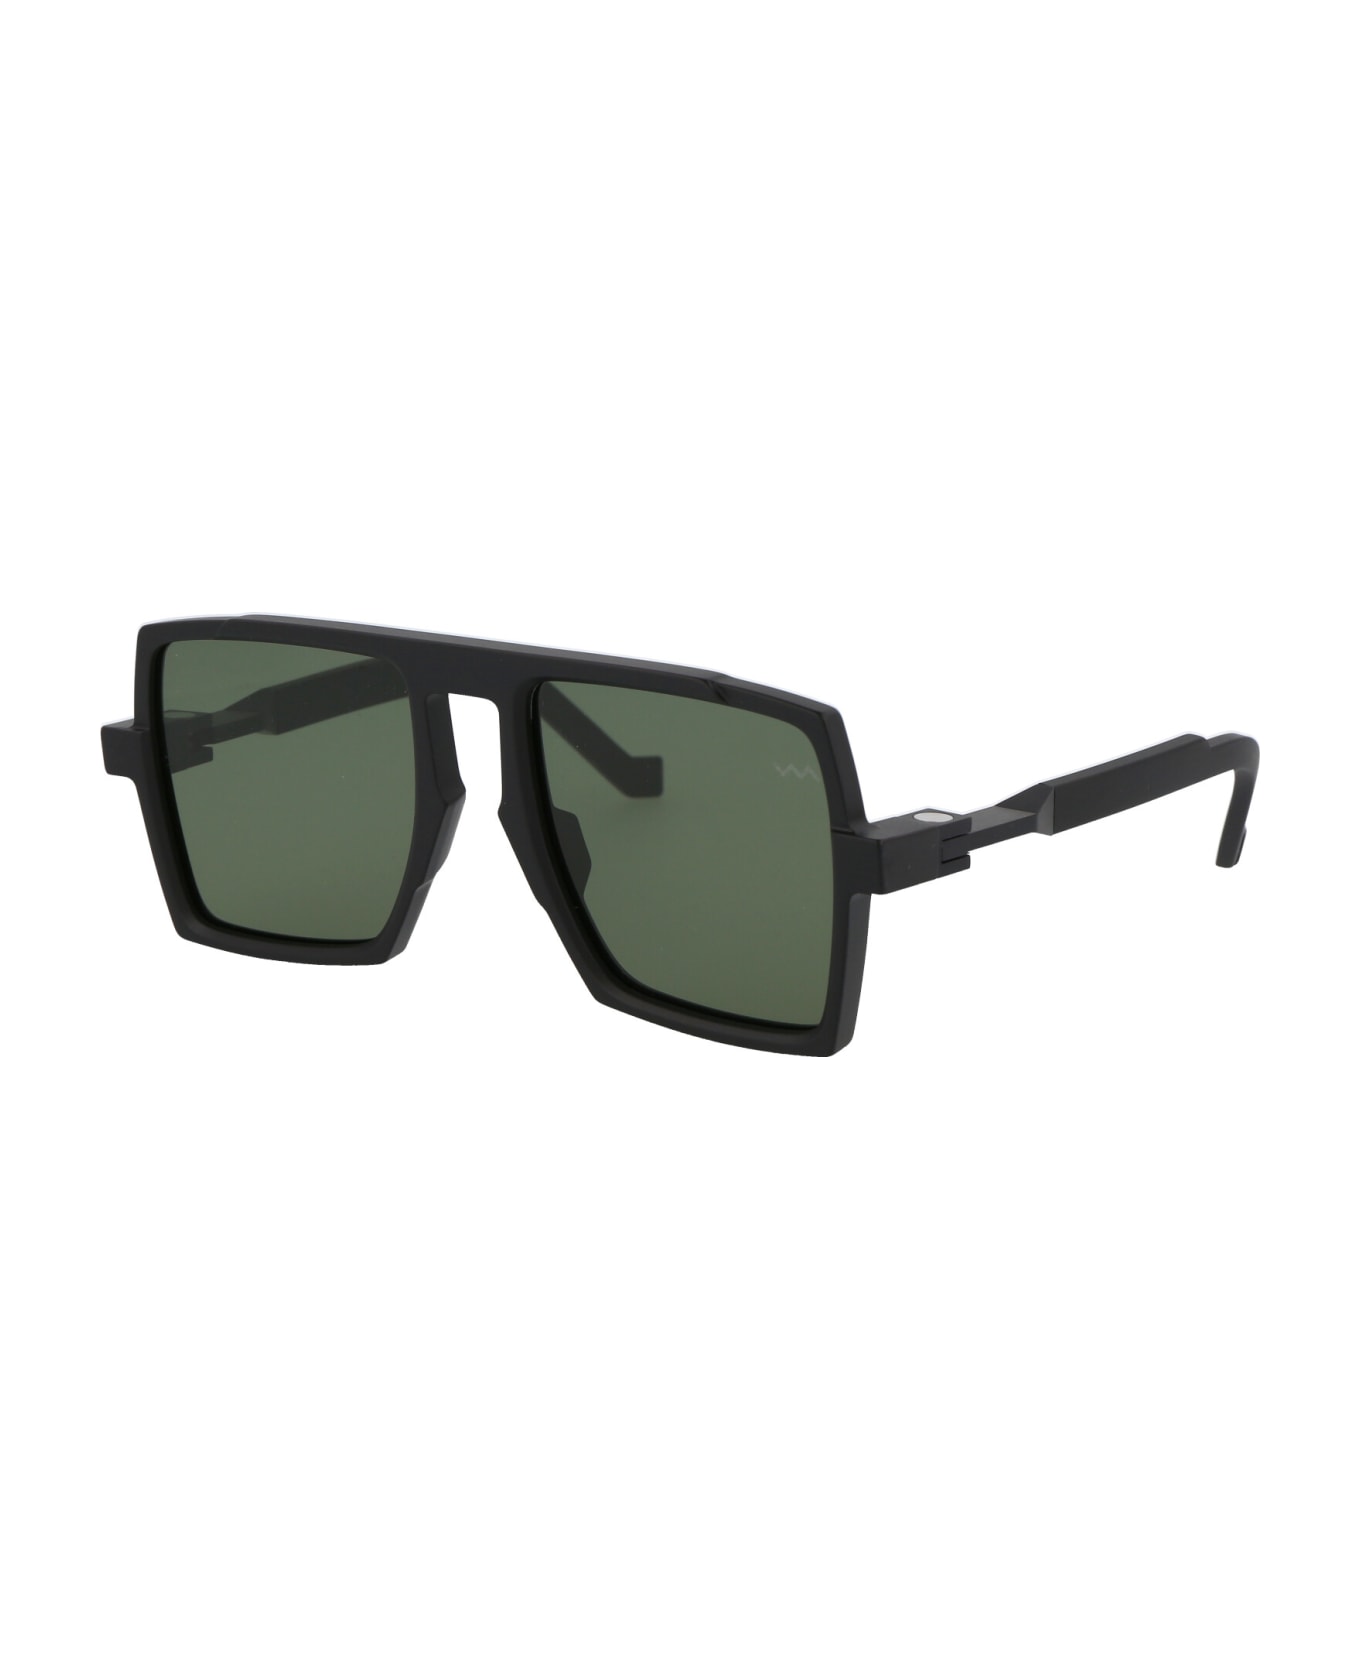 VAVA Bl0026 Sunglasses - MATTE BLACK|BLACK FLEX HINGES|GREEN LENSES サングラス